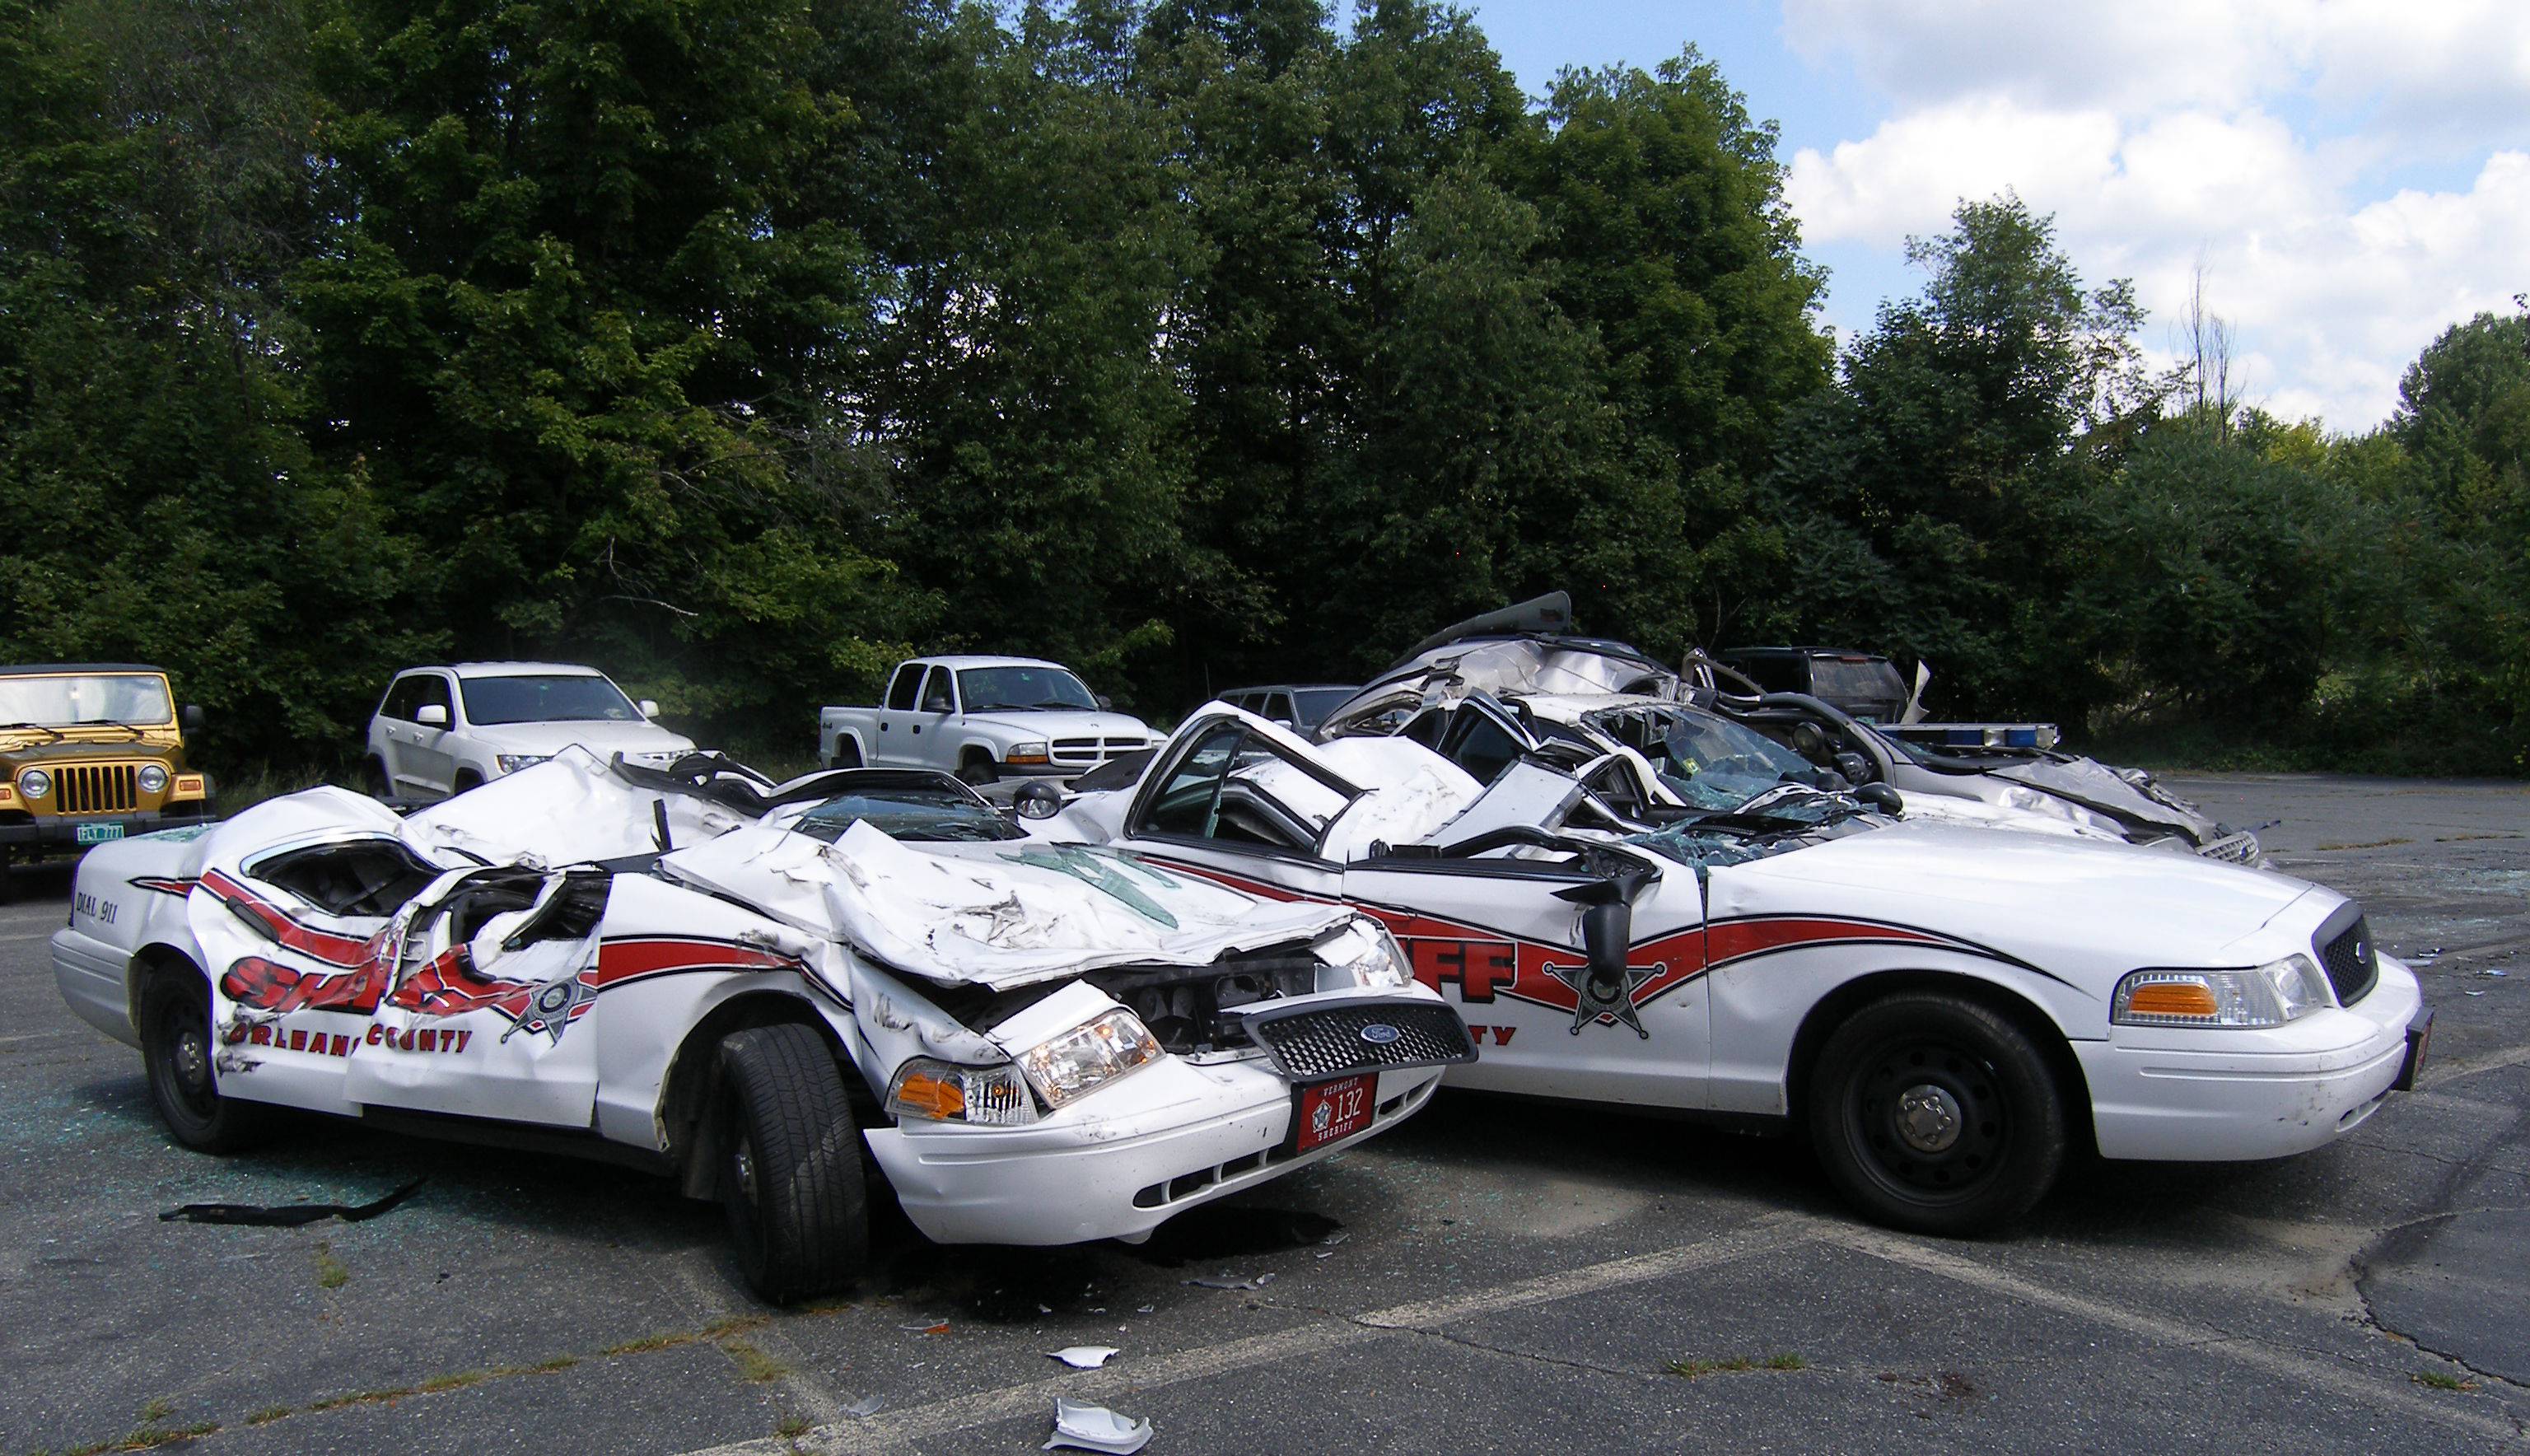 Разбитые полицейские машины. Разбитая Полицейская машина США. Разбитые машины полиции США. Пазьмтая Полицейская машина США.